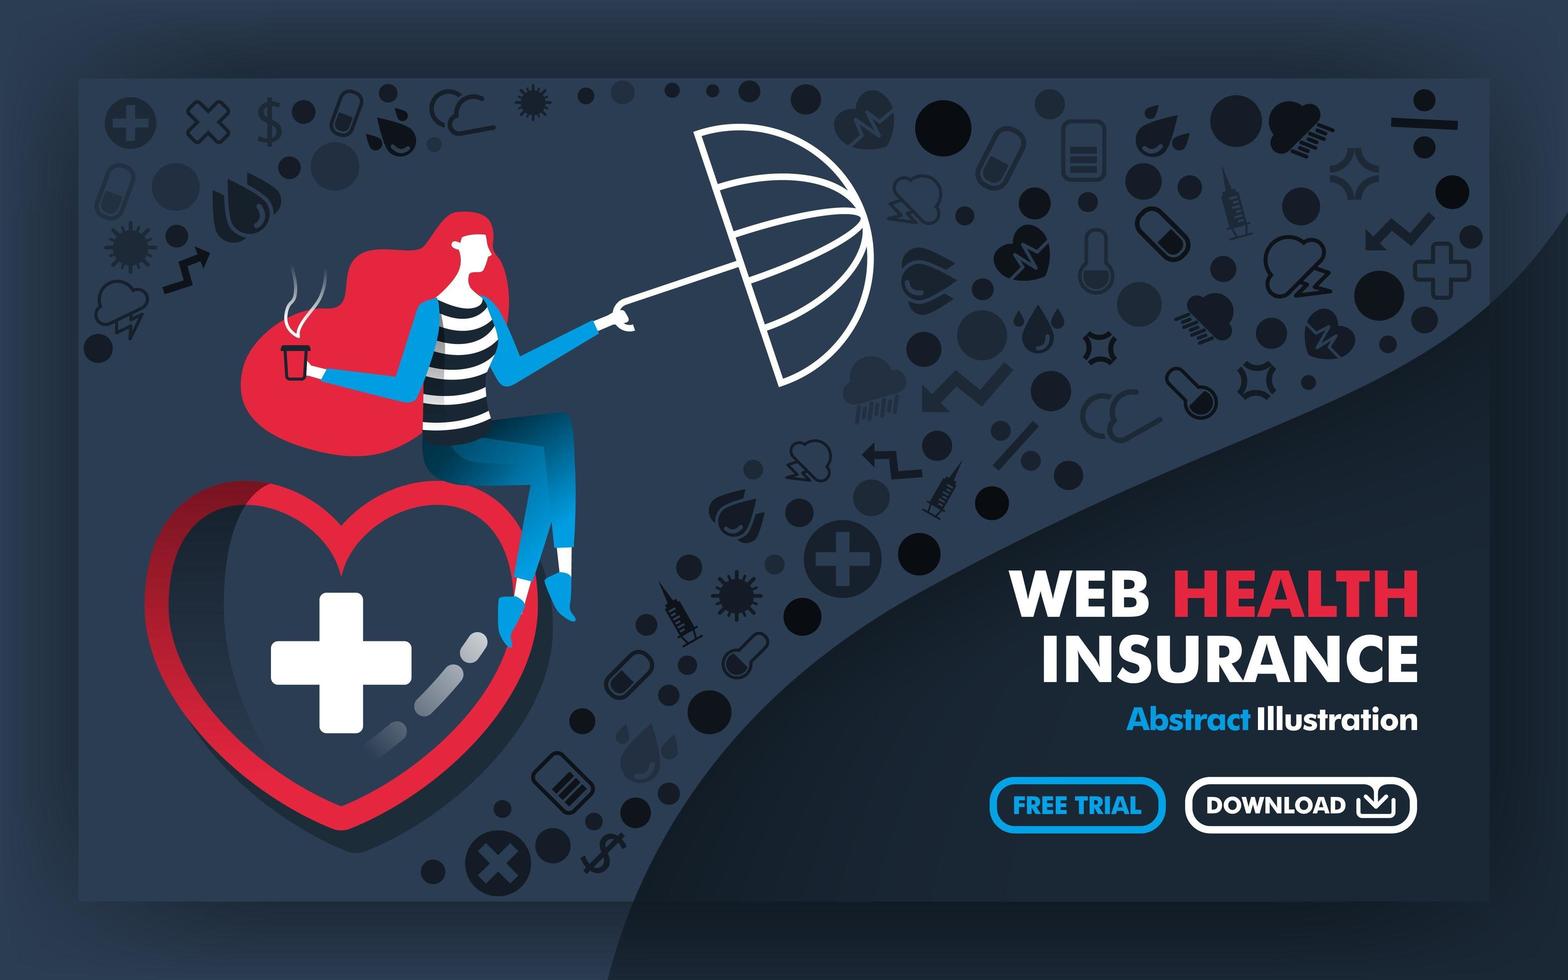 vektor abstrakta illustration banners och affischer i grått med titeln webb sjukförsäkring. kvinnan som sitter i det stora hjärtat och håller ett paraply för att skydda sjukdomen. platt tecknad stil